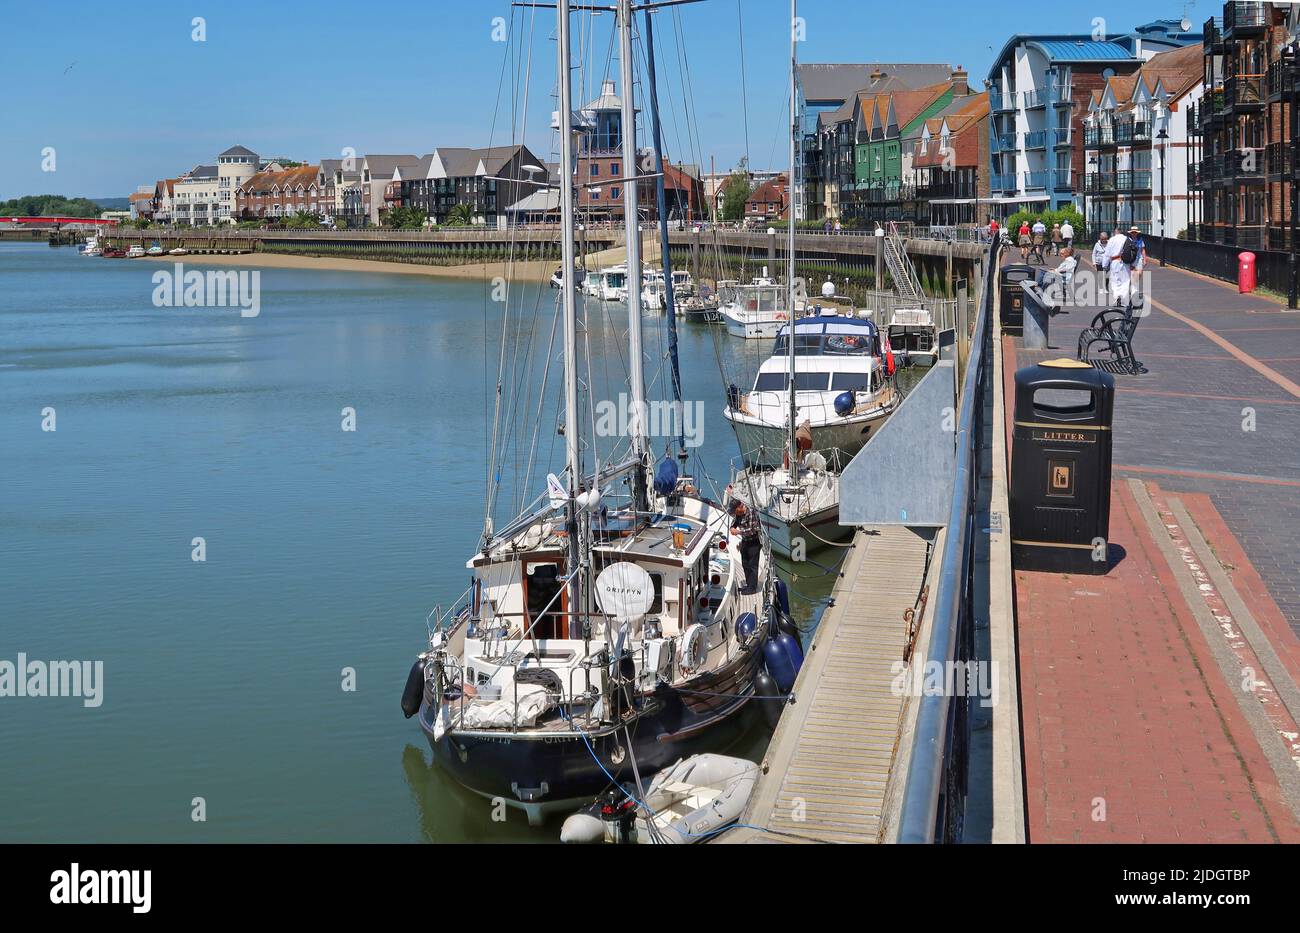 Littlehampton, West Sussex, Royaume-Uni. Yachts amarrés sur la rive est de la rivière Arun. Montre le sentier de promenade au bord de la rivière et le centre-ville au-delà. Banque D'Images